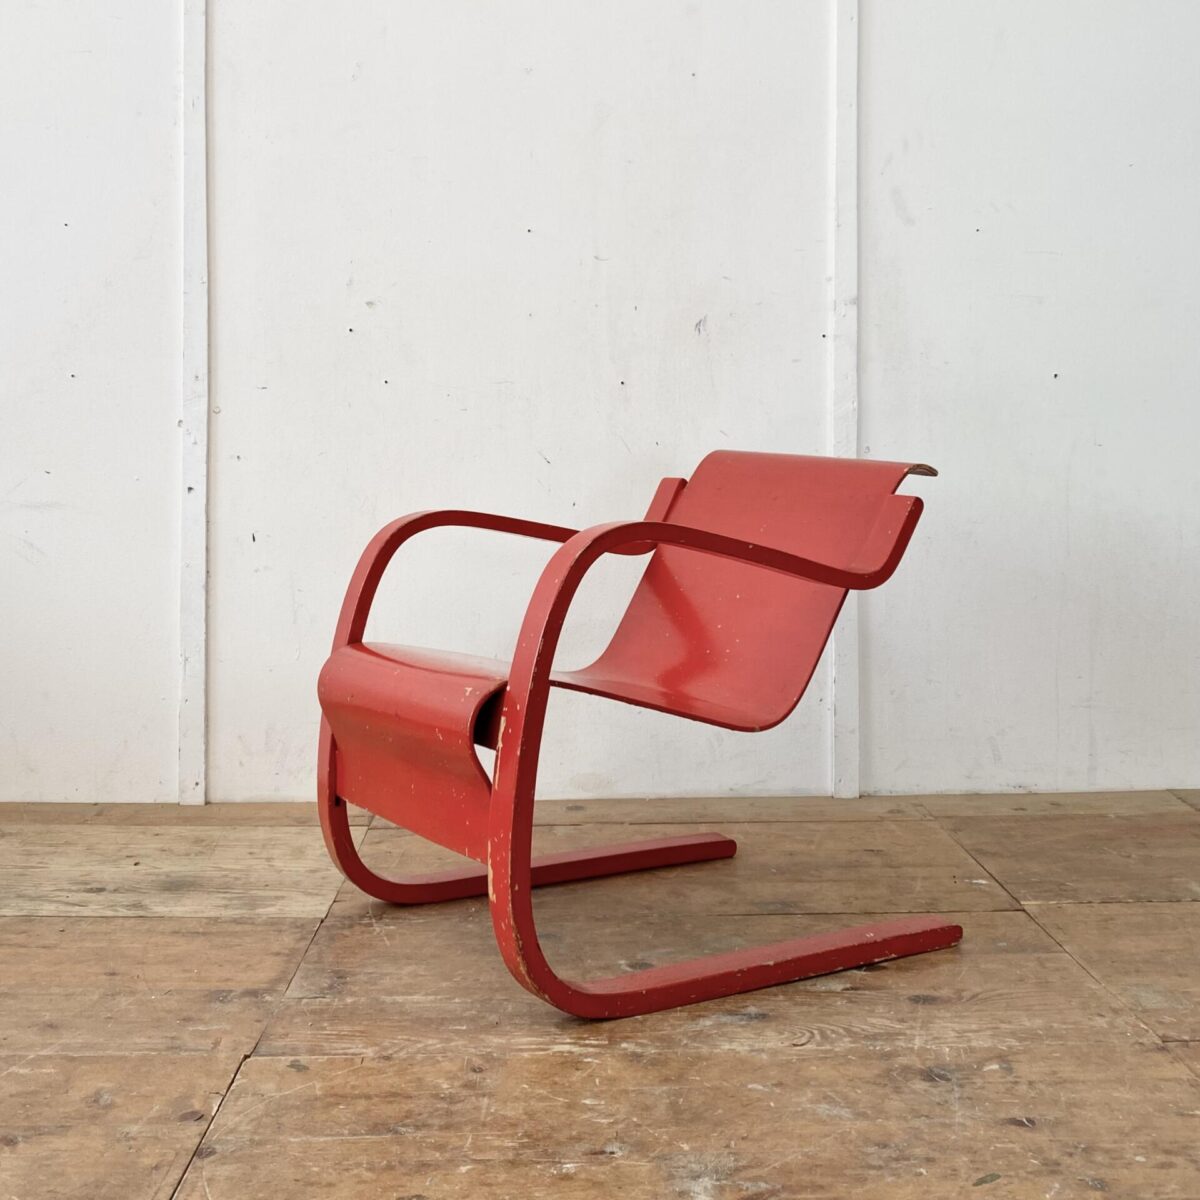 Deuxieme.shop Alvar Aalto Freischwinger Sessel. Modell 31 Birke Formsperrholz. Der Sessel ist etwas asymmetrisch (verzogen) was bei älteren Modellen öfters so ist. Im Bild 4 gut zu sehen. Die rote Farbe ist etwas abgewetzt, und mehrere Farbabplatzer an diversen Stellen. 